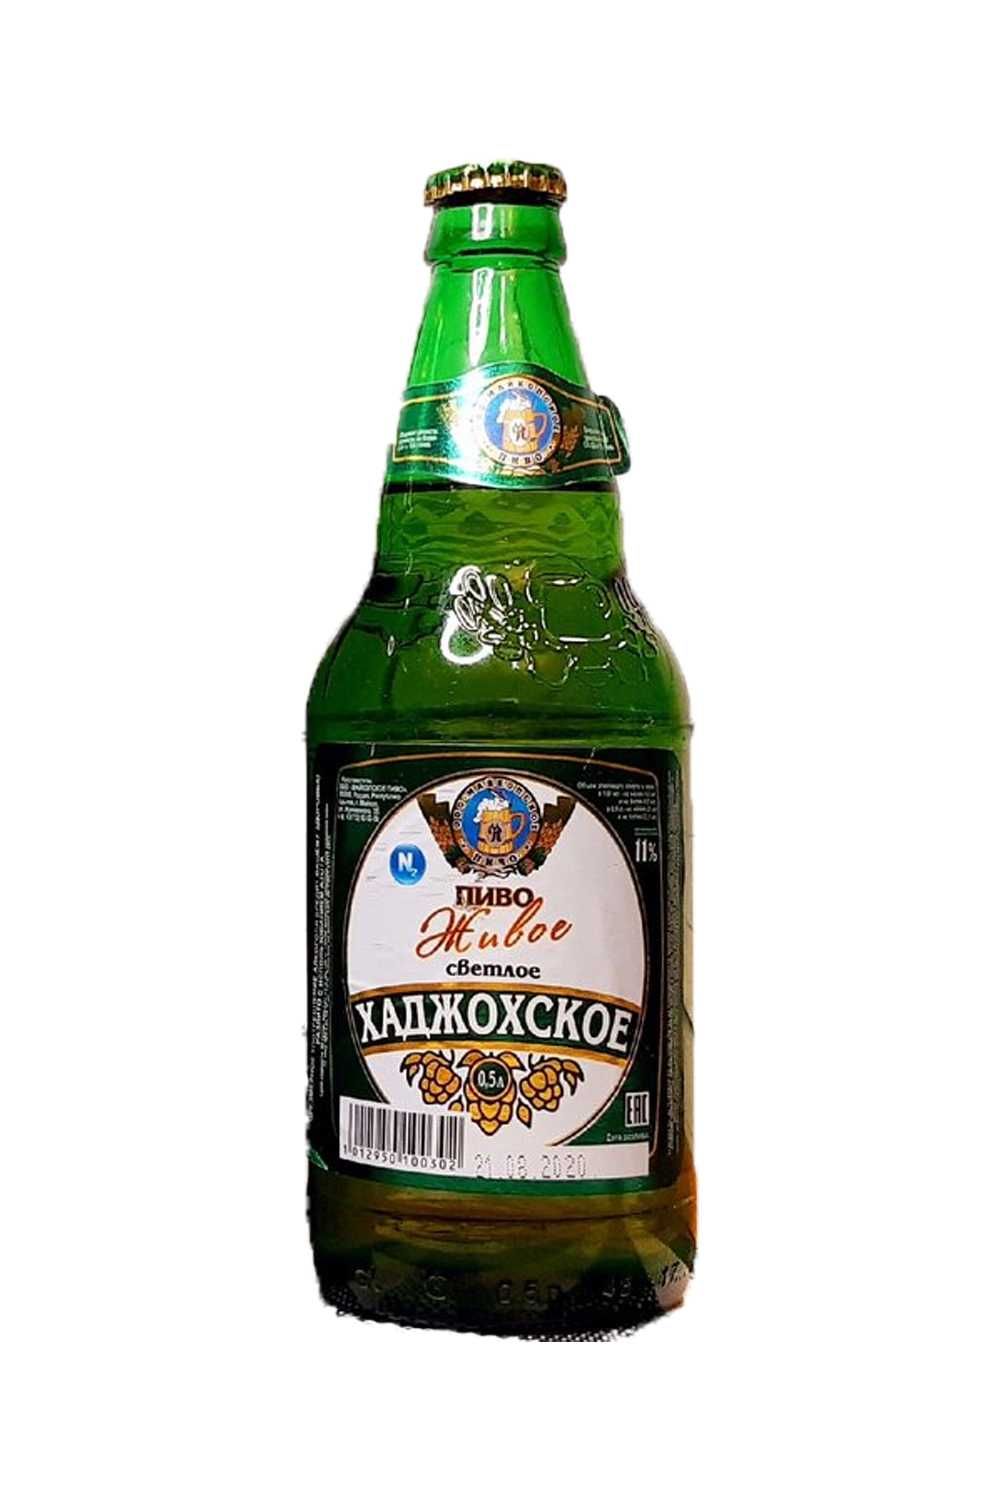 Пиво Хаджохское св 4,0% с/т 0,5 л